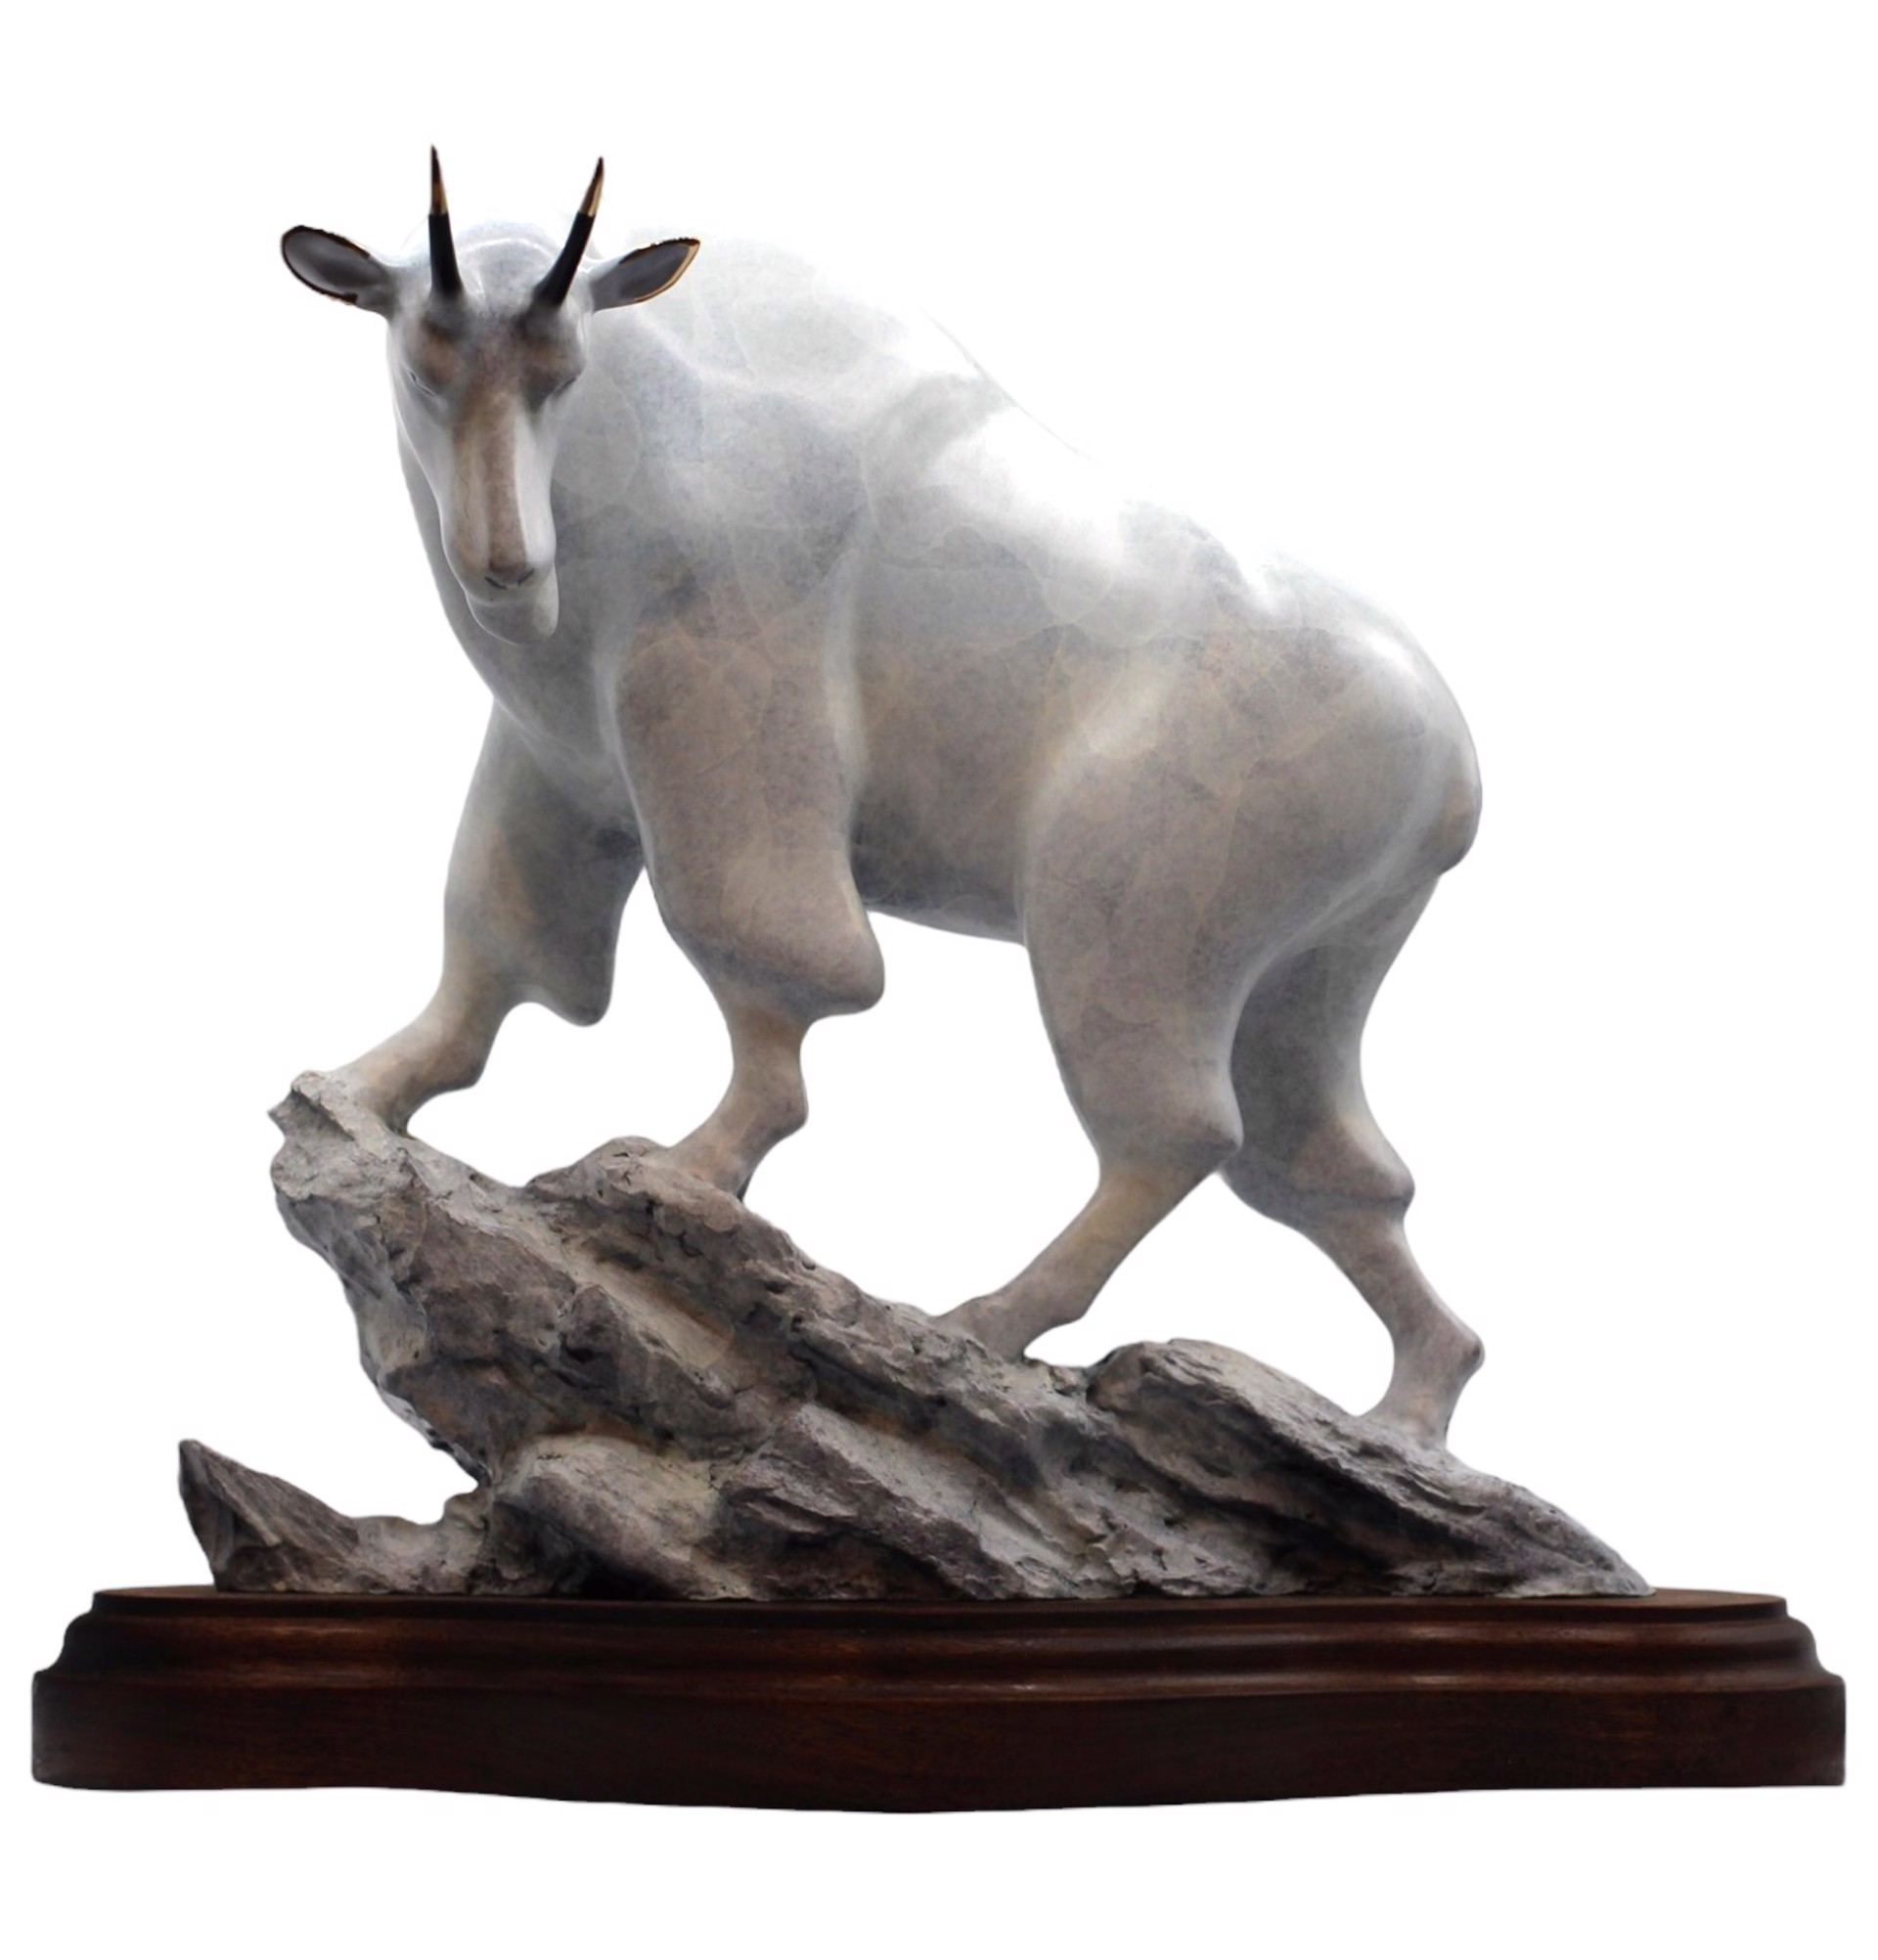 Pinnacle Pontiff (Mountain Goat) by Robert Deurloo